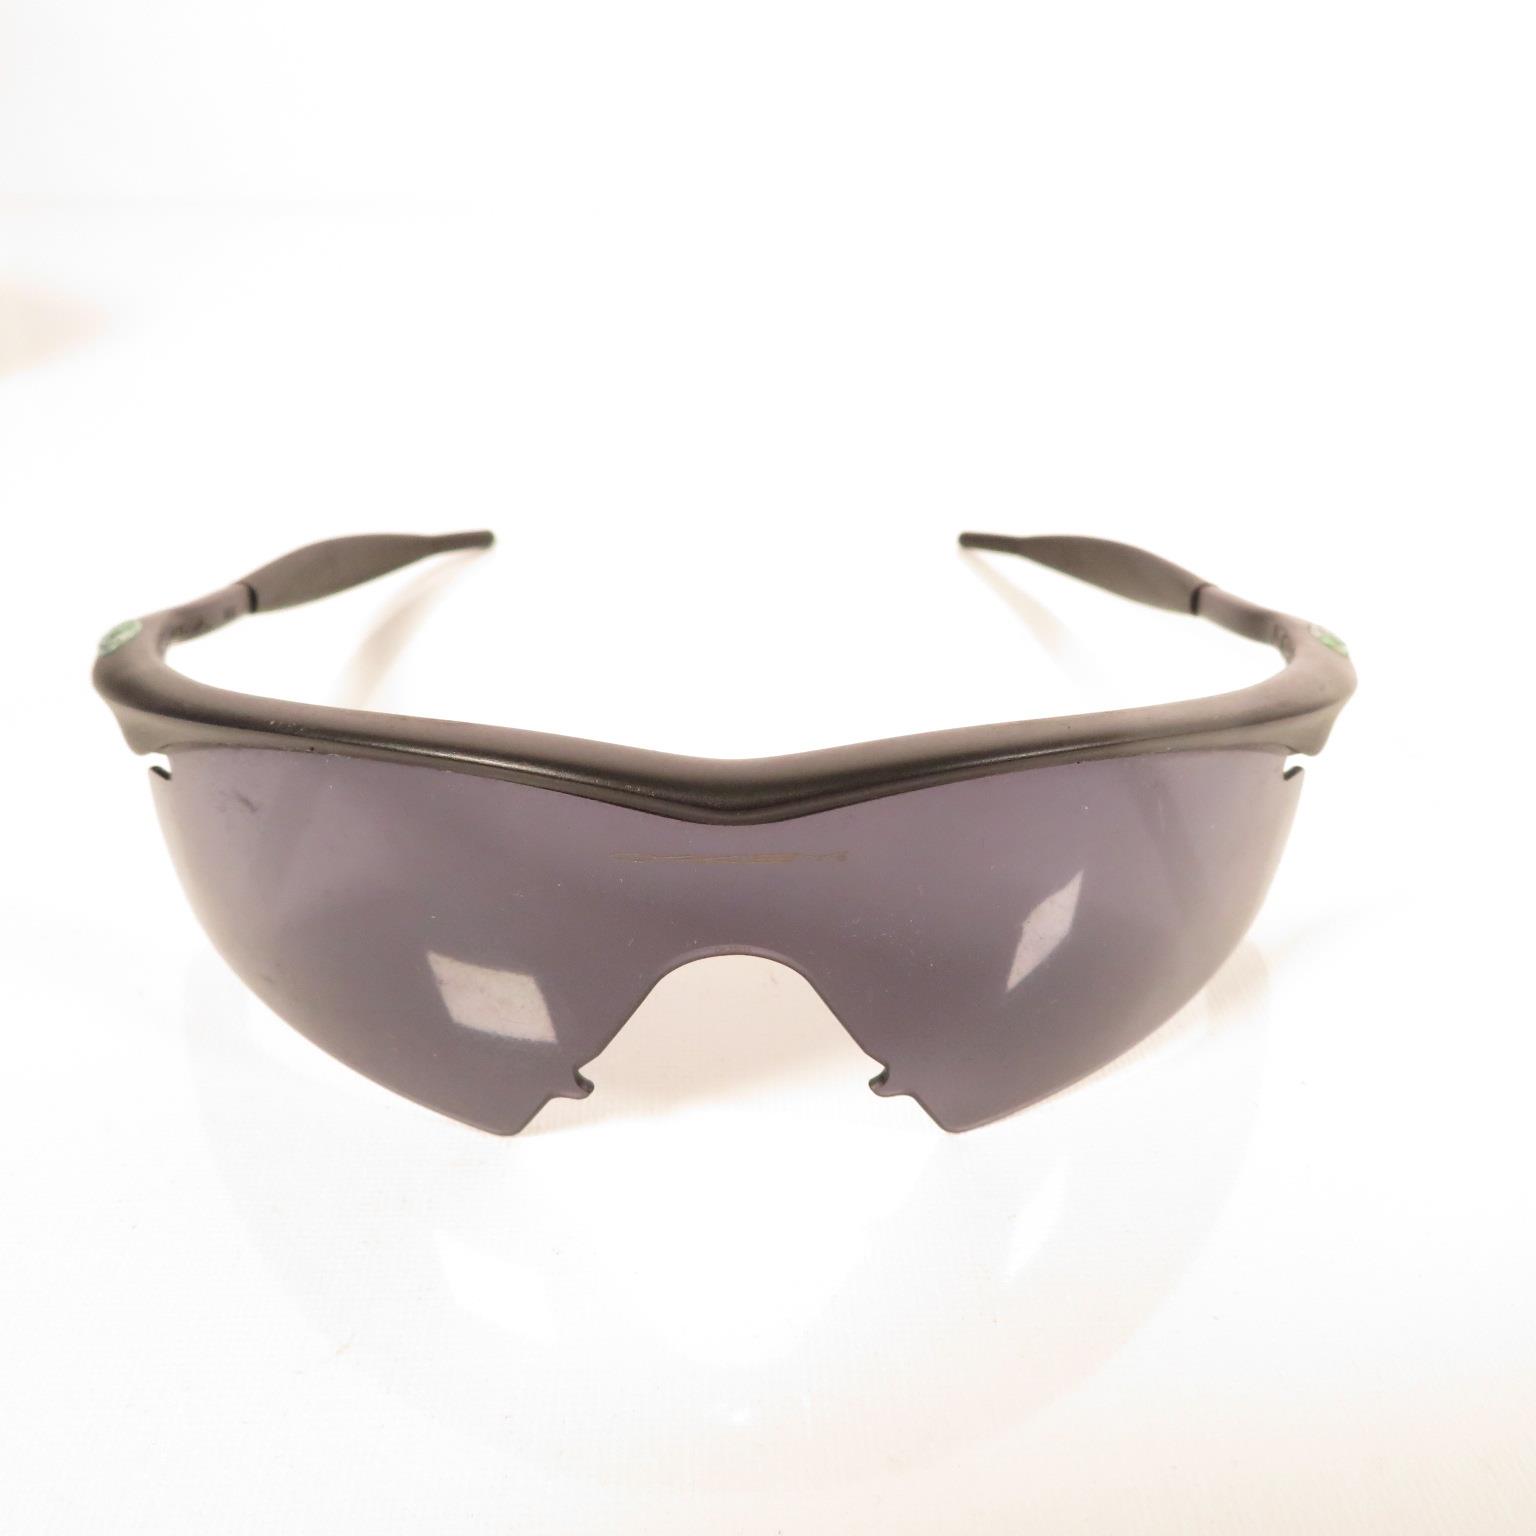 Pair of Porsche Folding Sunglasses, Per Sol folding Sunglasses, Oakley sunglasses and Porsche design - Bild 3 aus 17